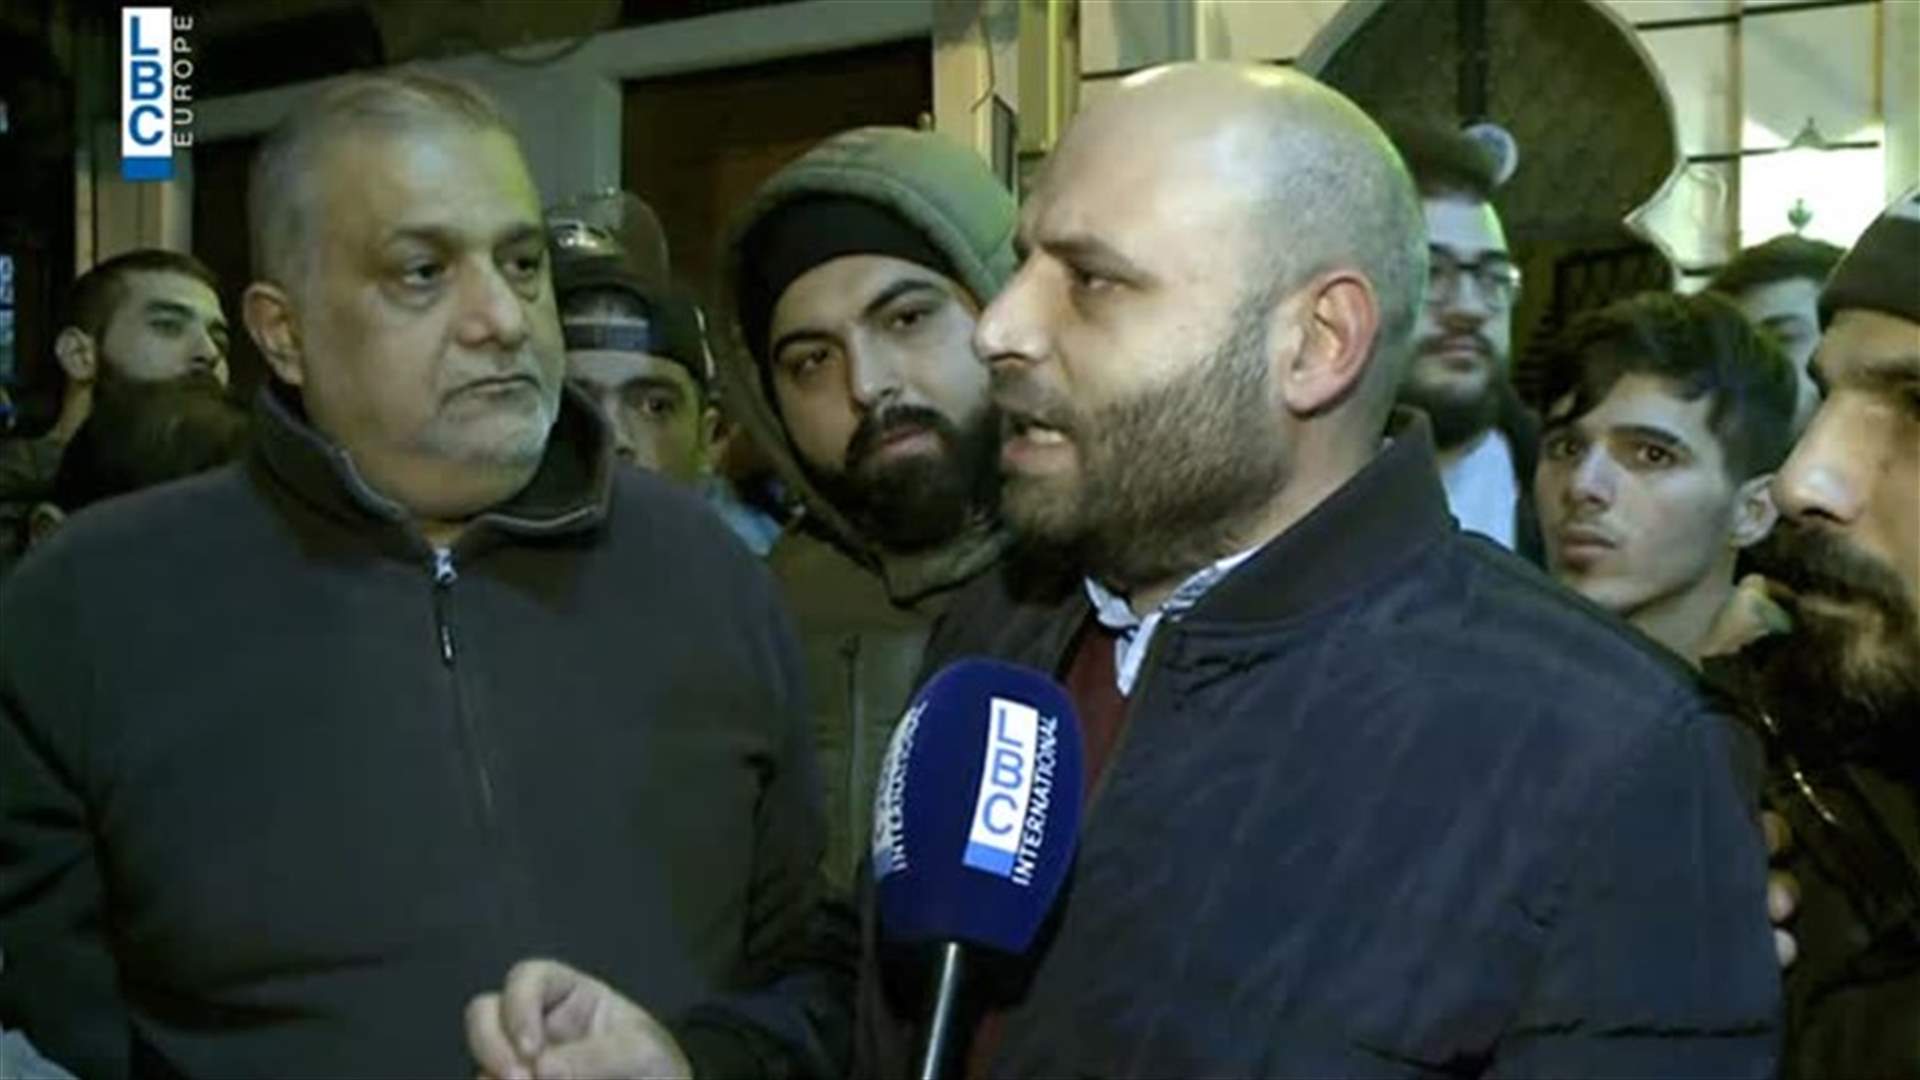 عضو من بلدية طرابلس في الخندق الغميق بعد الفيديو المسيء: وجعنا وفقرنا واحد (فيديو)